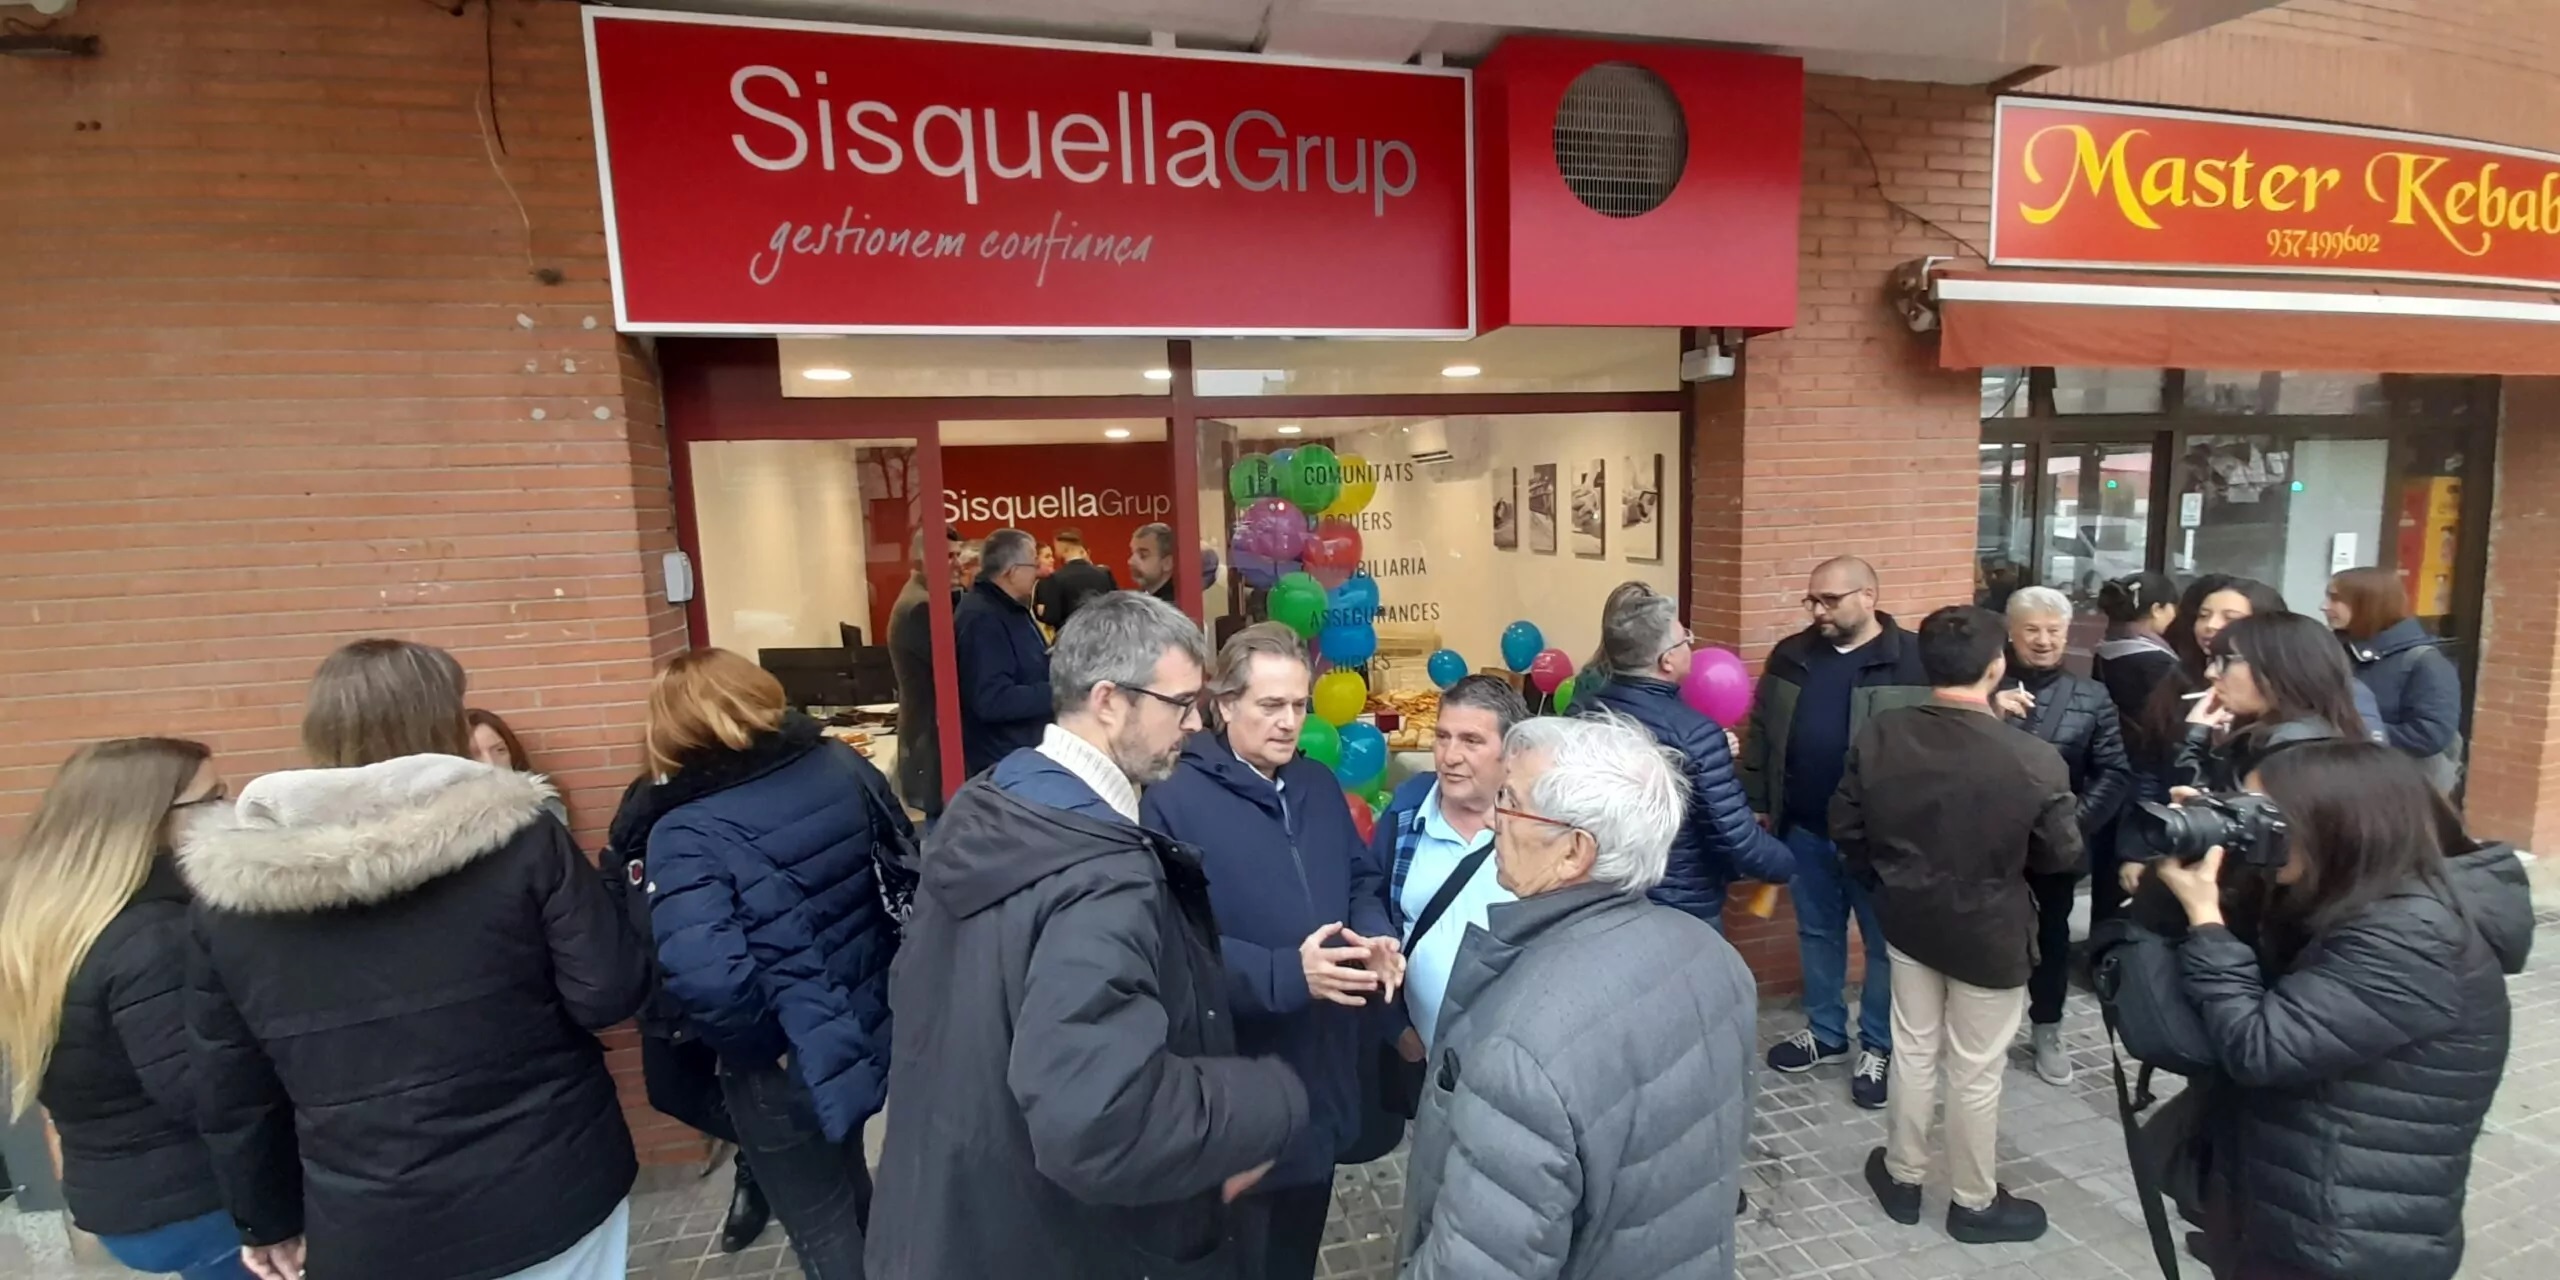 SisquellaGrup obre la seva quarta oficina a Cerdanyola del Vallès